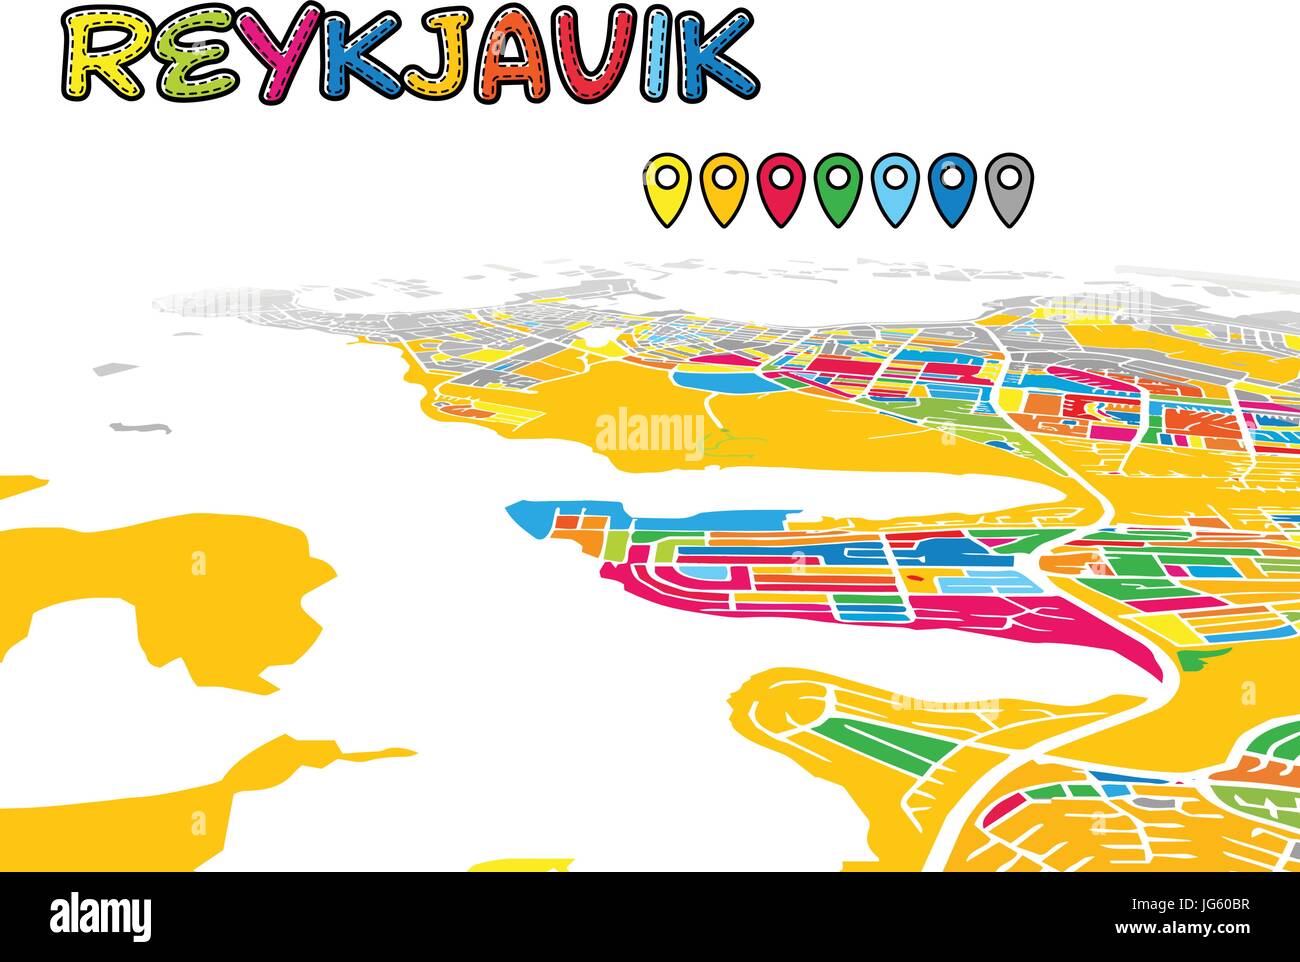 Le centre-ville de Reykjavik, Islande, la carte 3D de vecteur de célèbres rues. Avant-plan lumineux plein de couleurs. Les rues, les cours d'eau et blanc fond gris areal. Wh Illustration de Vecteur